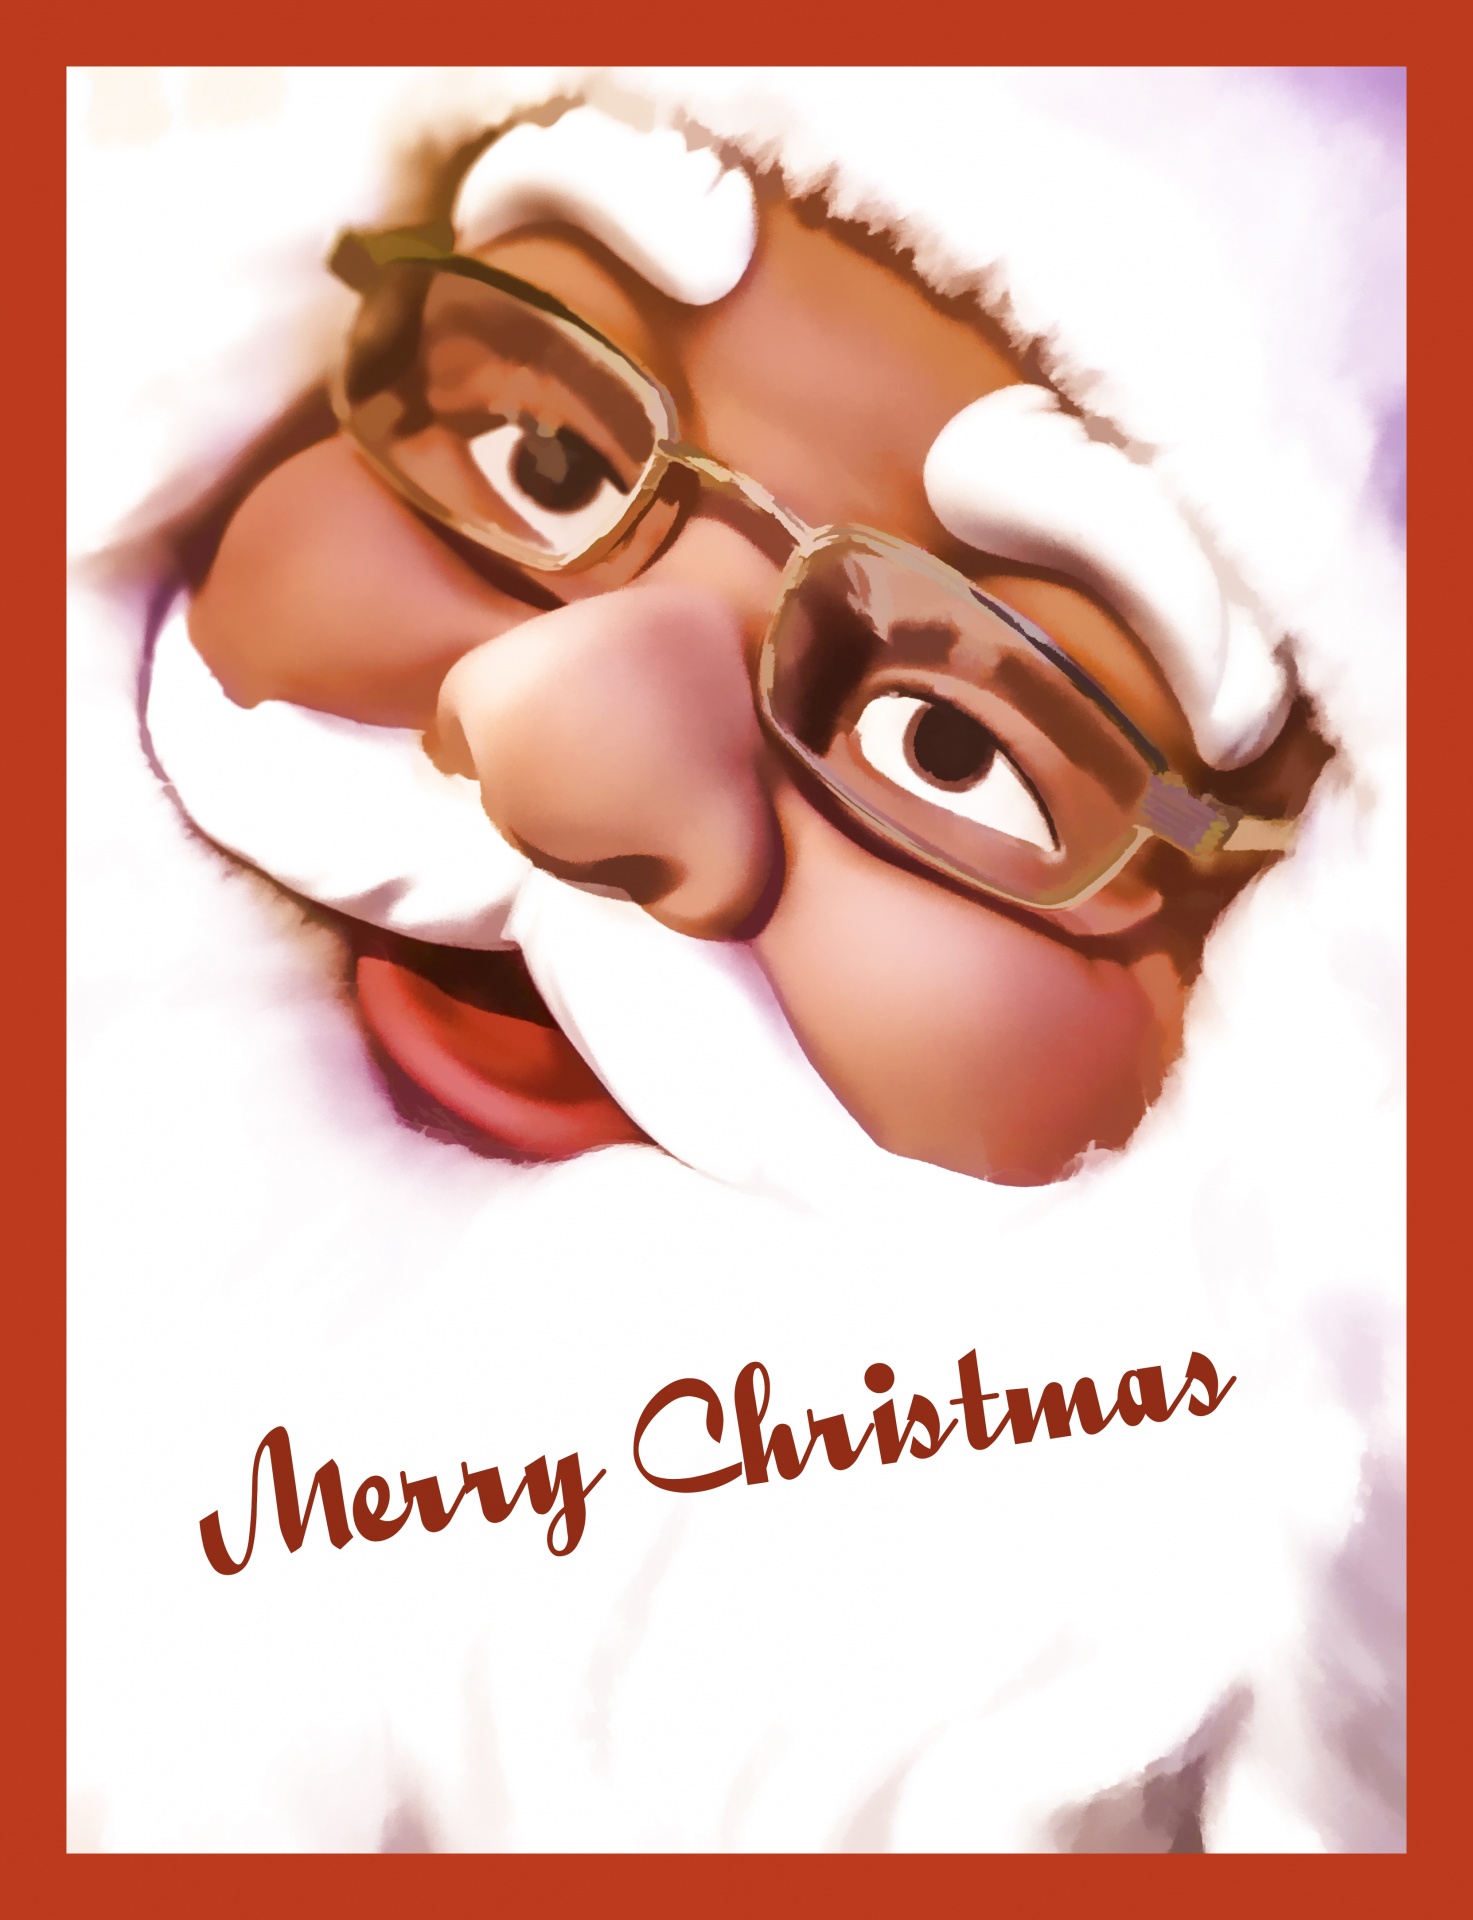 Cartão de Natal Papai Noel